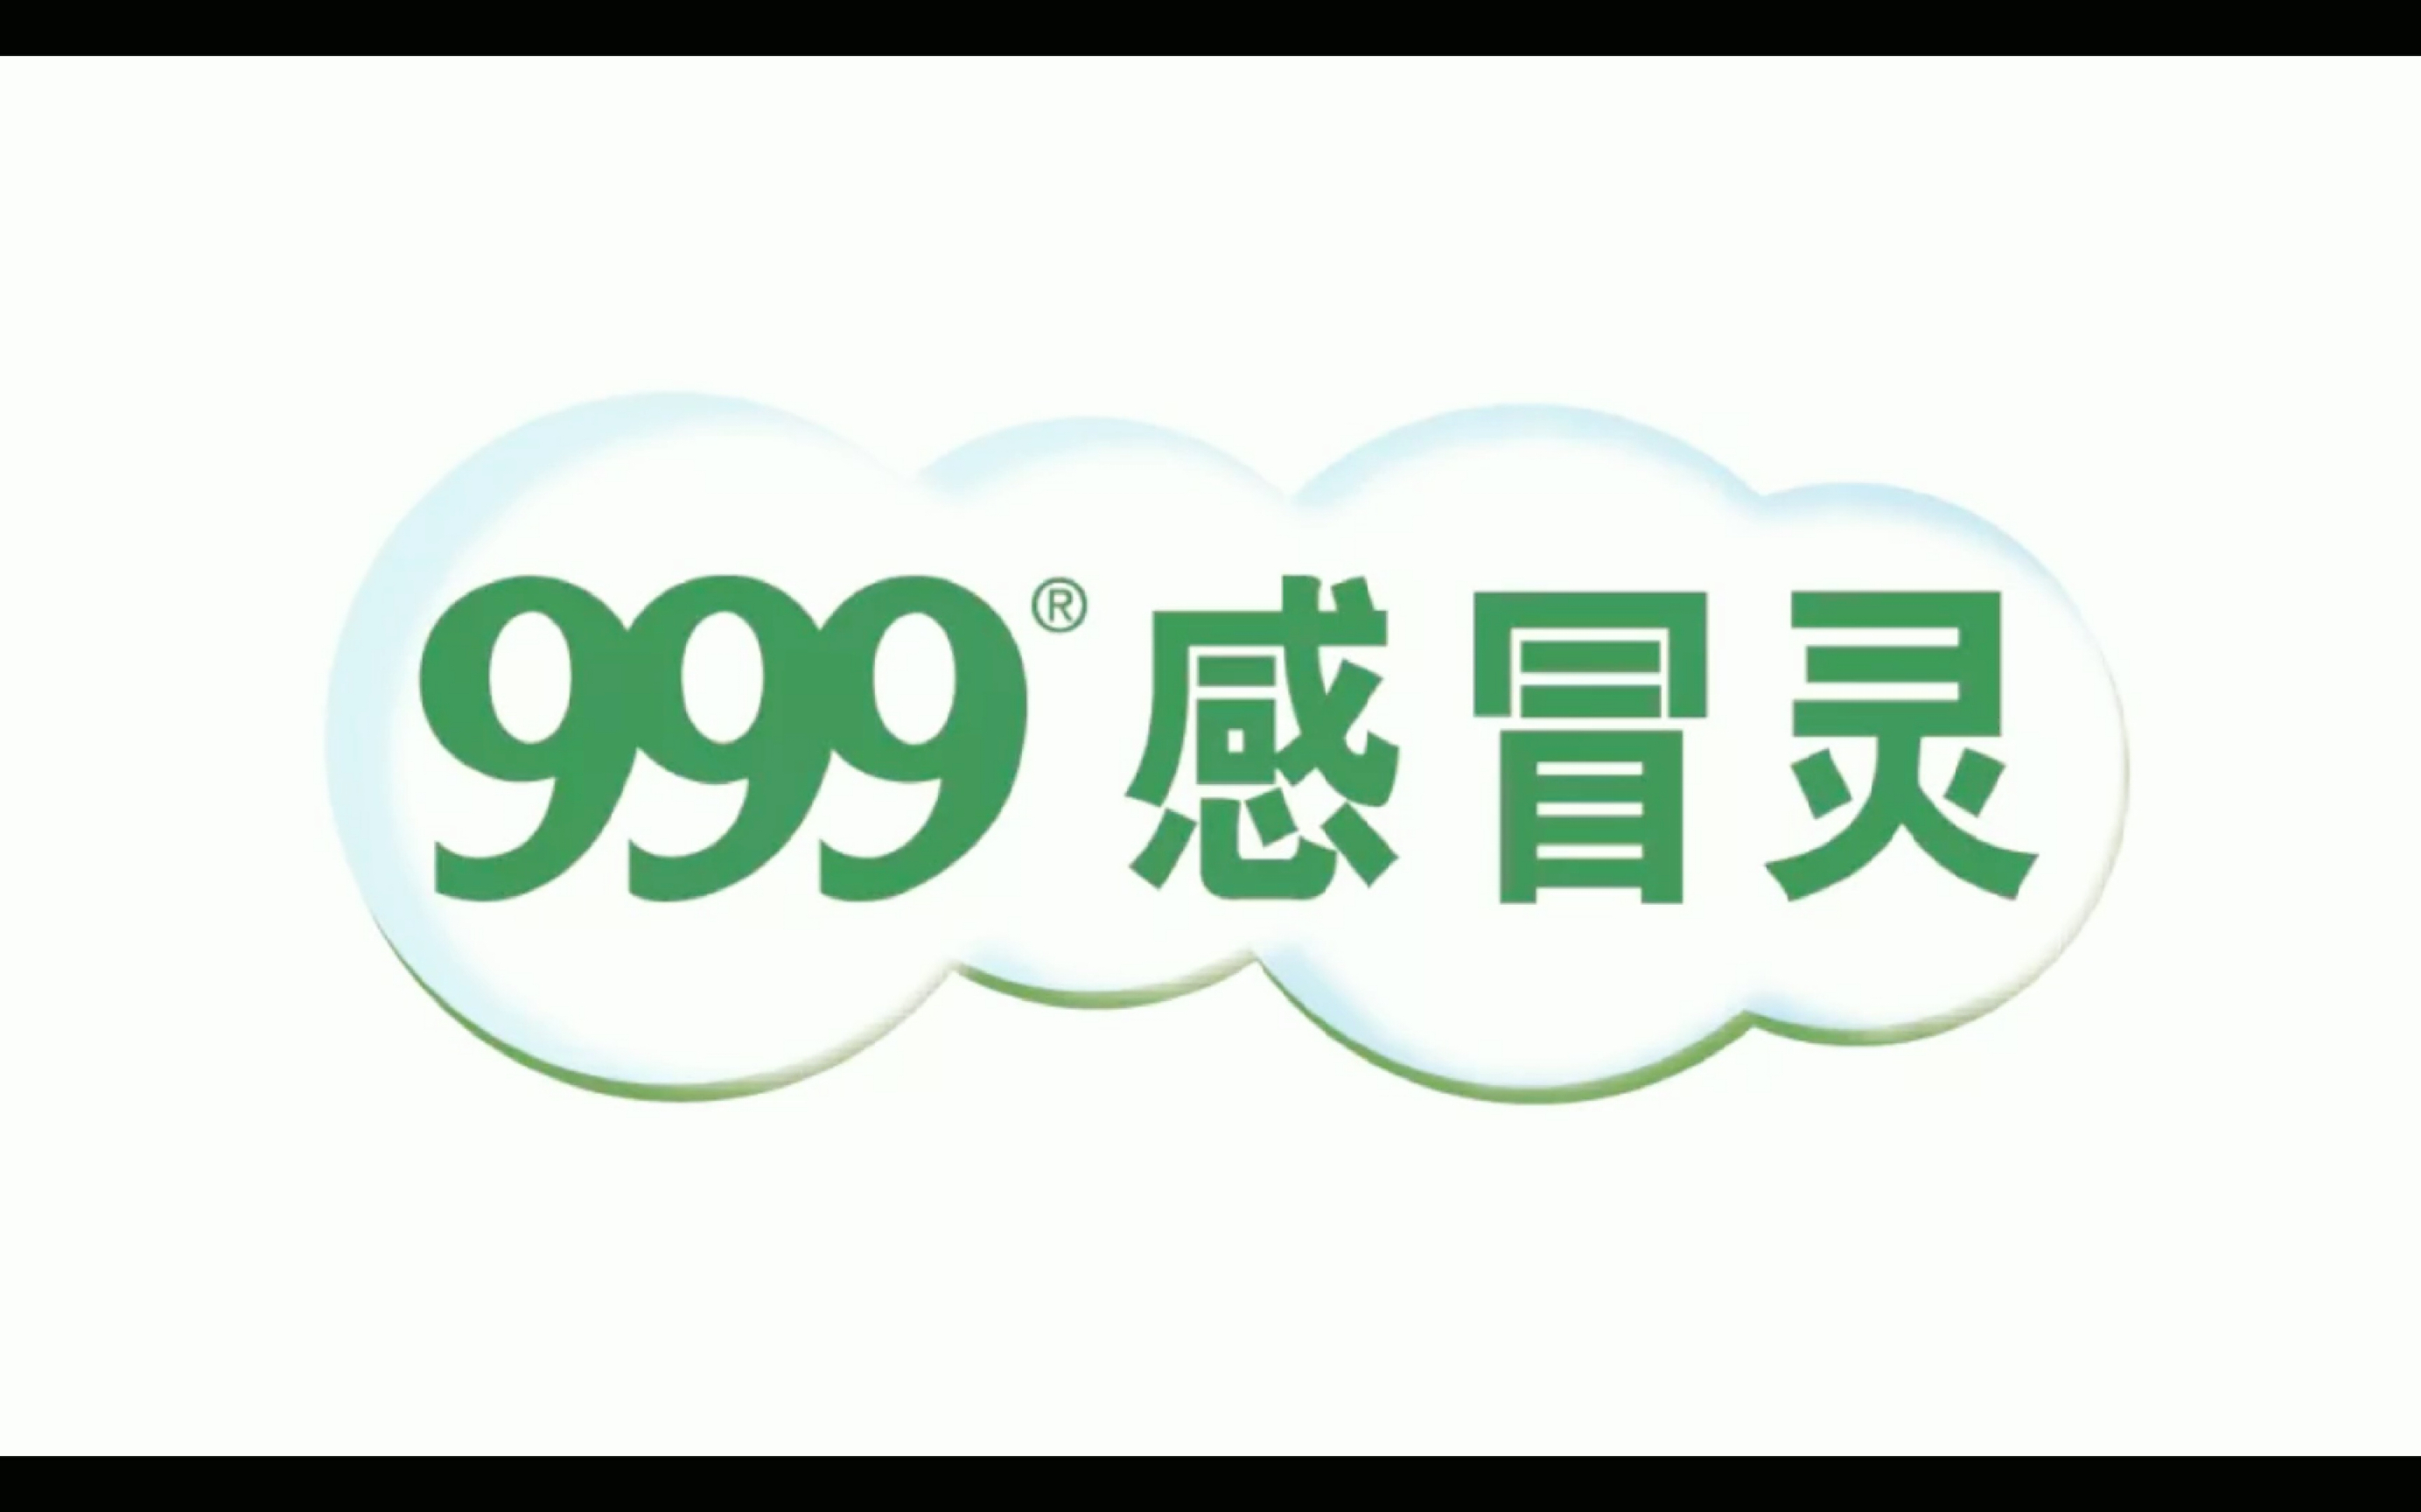 999感冒灵logo图片